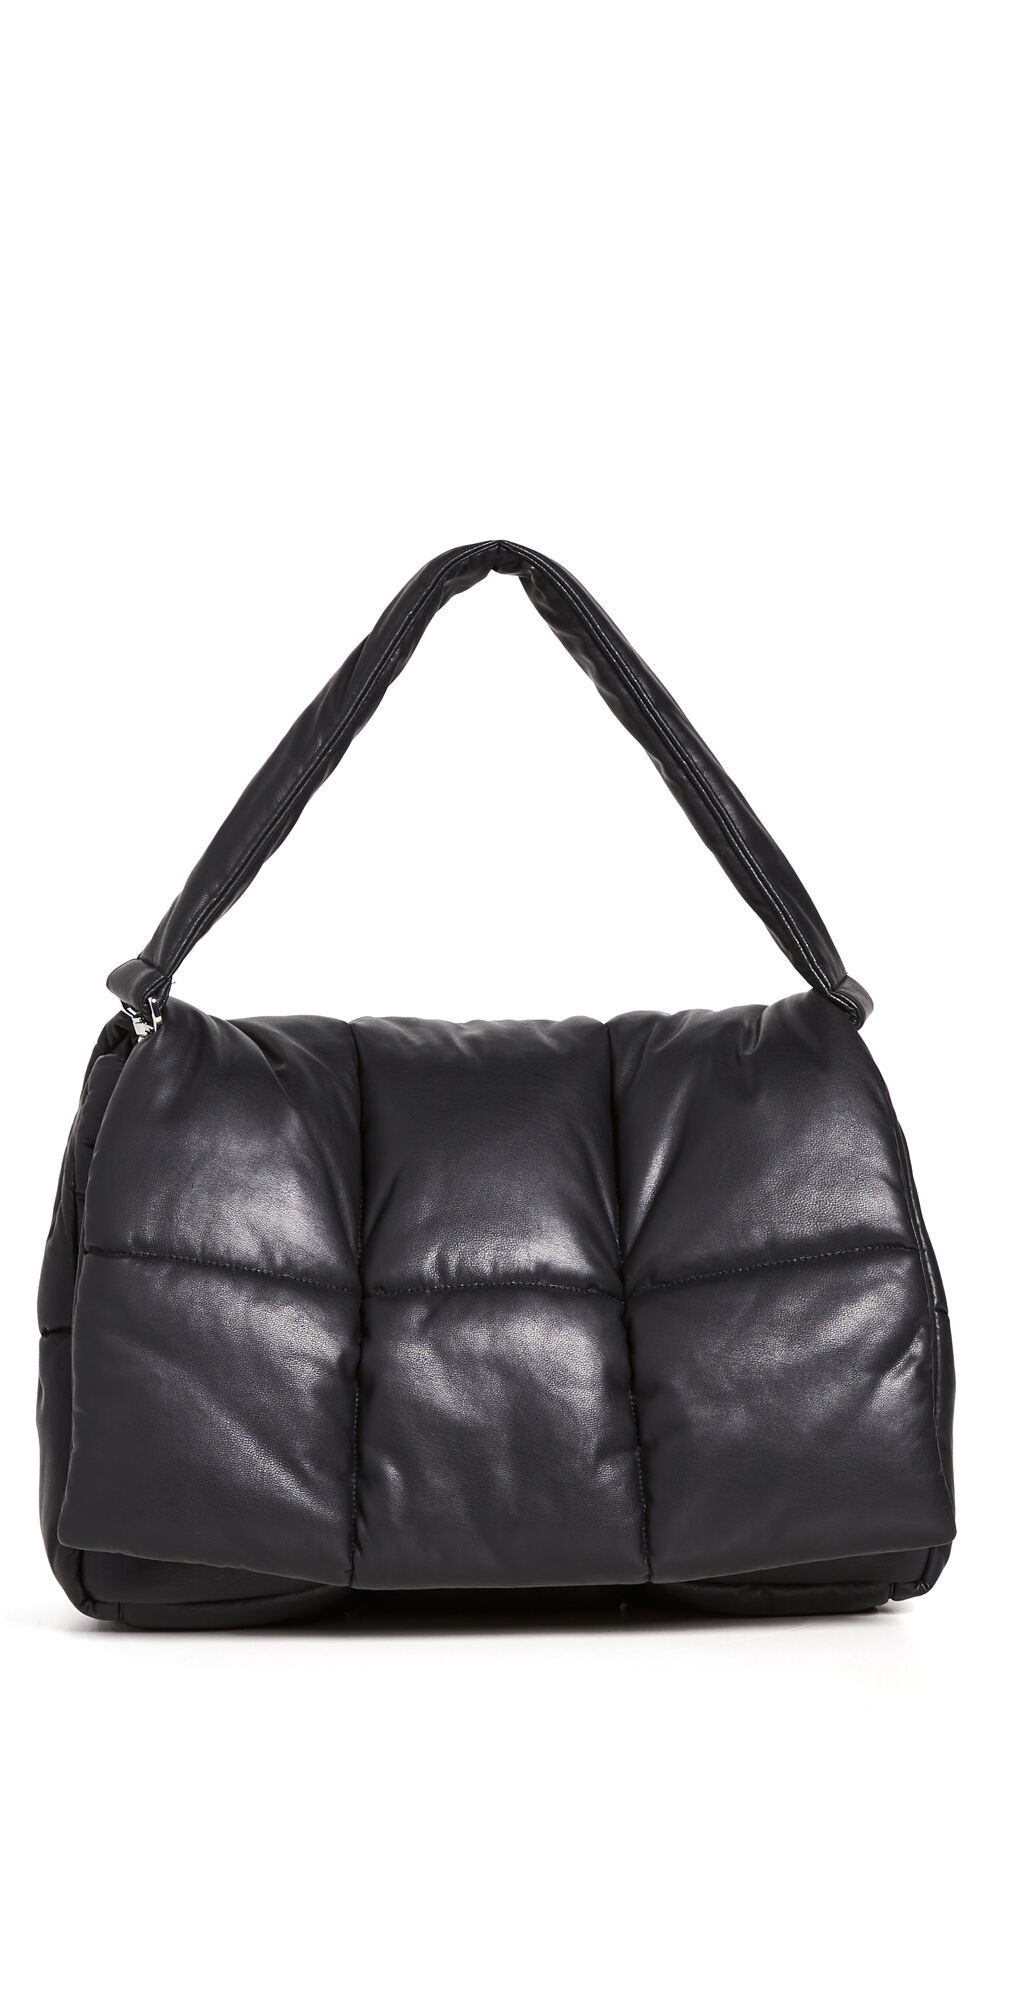 STAND STUDIO Wanda Clutch Bag Black One Size  Black  size:One Size